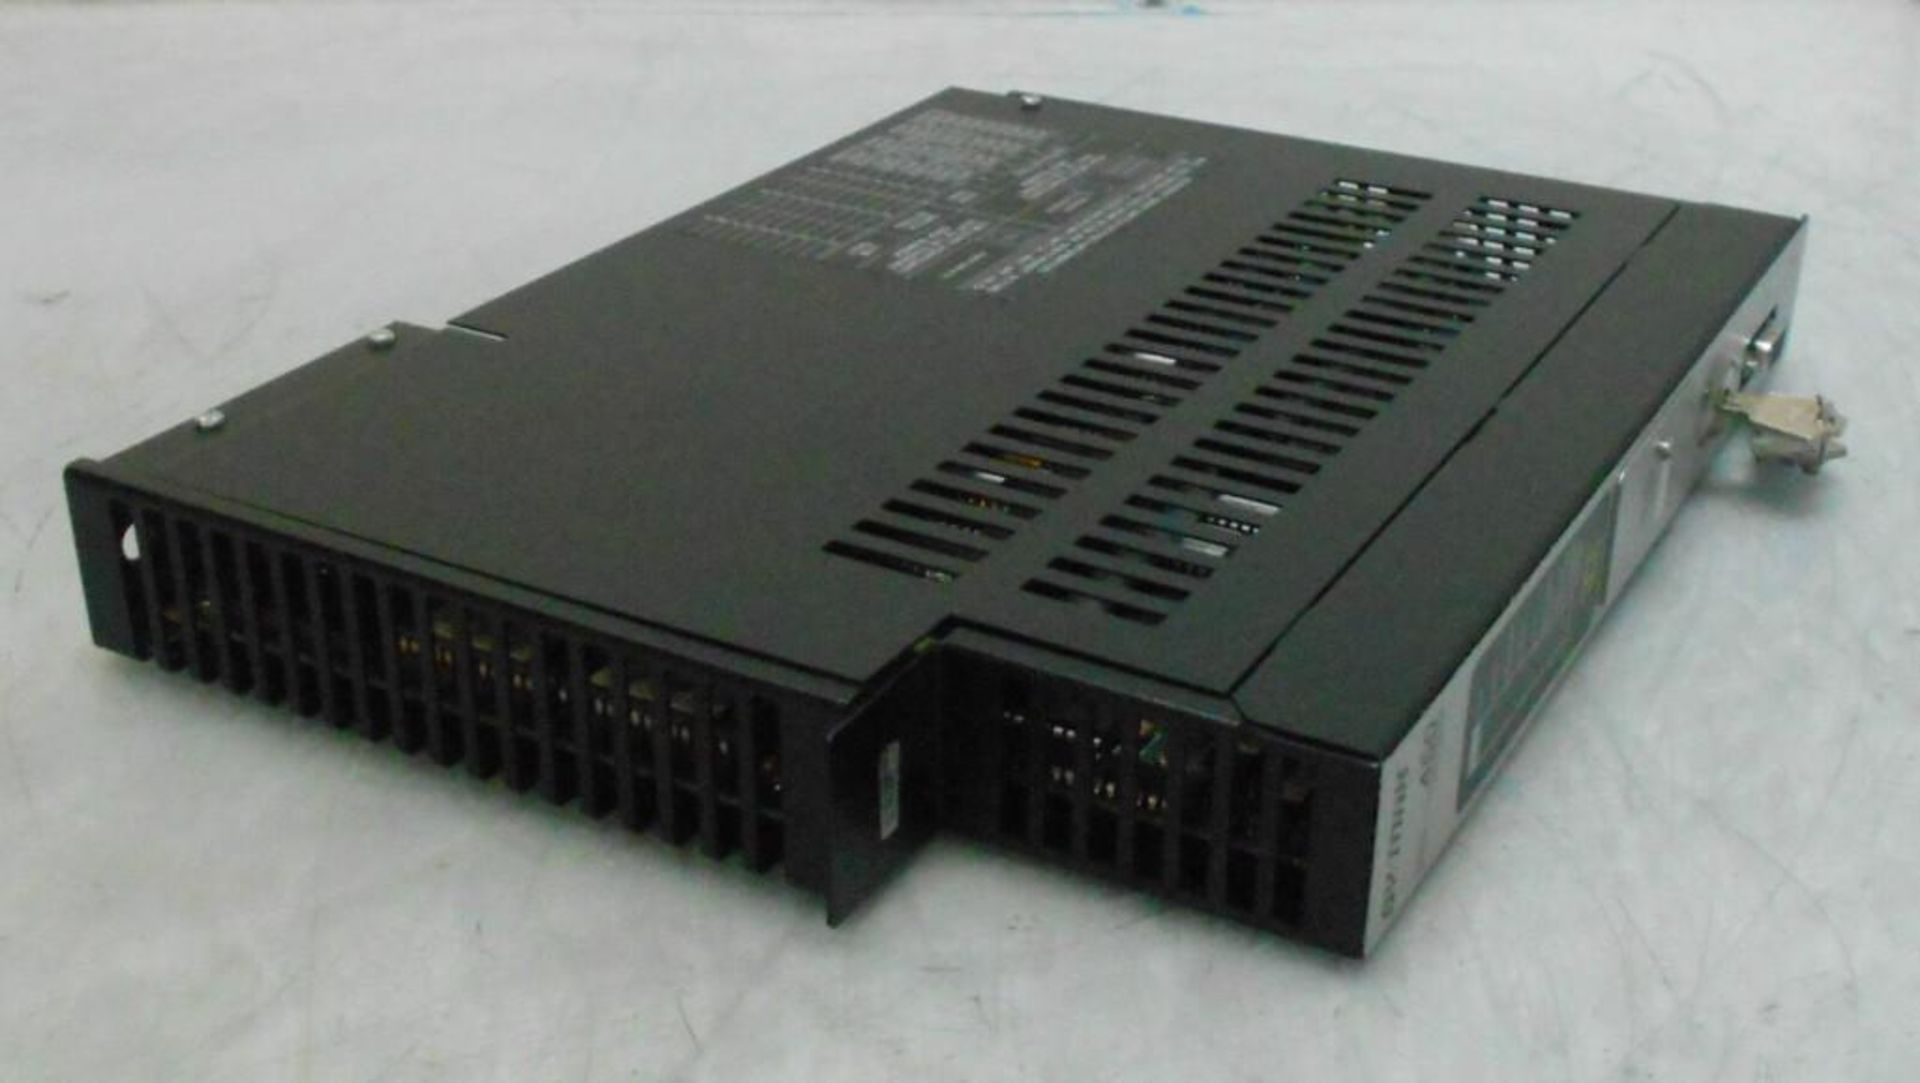 NEW Square D Sy/Max Processor Module, # 8055 SCP452 - Image 3 of 3